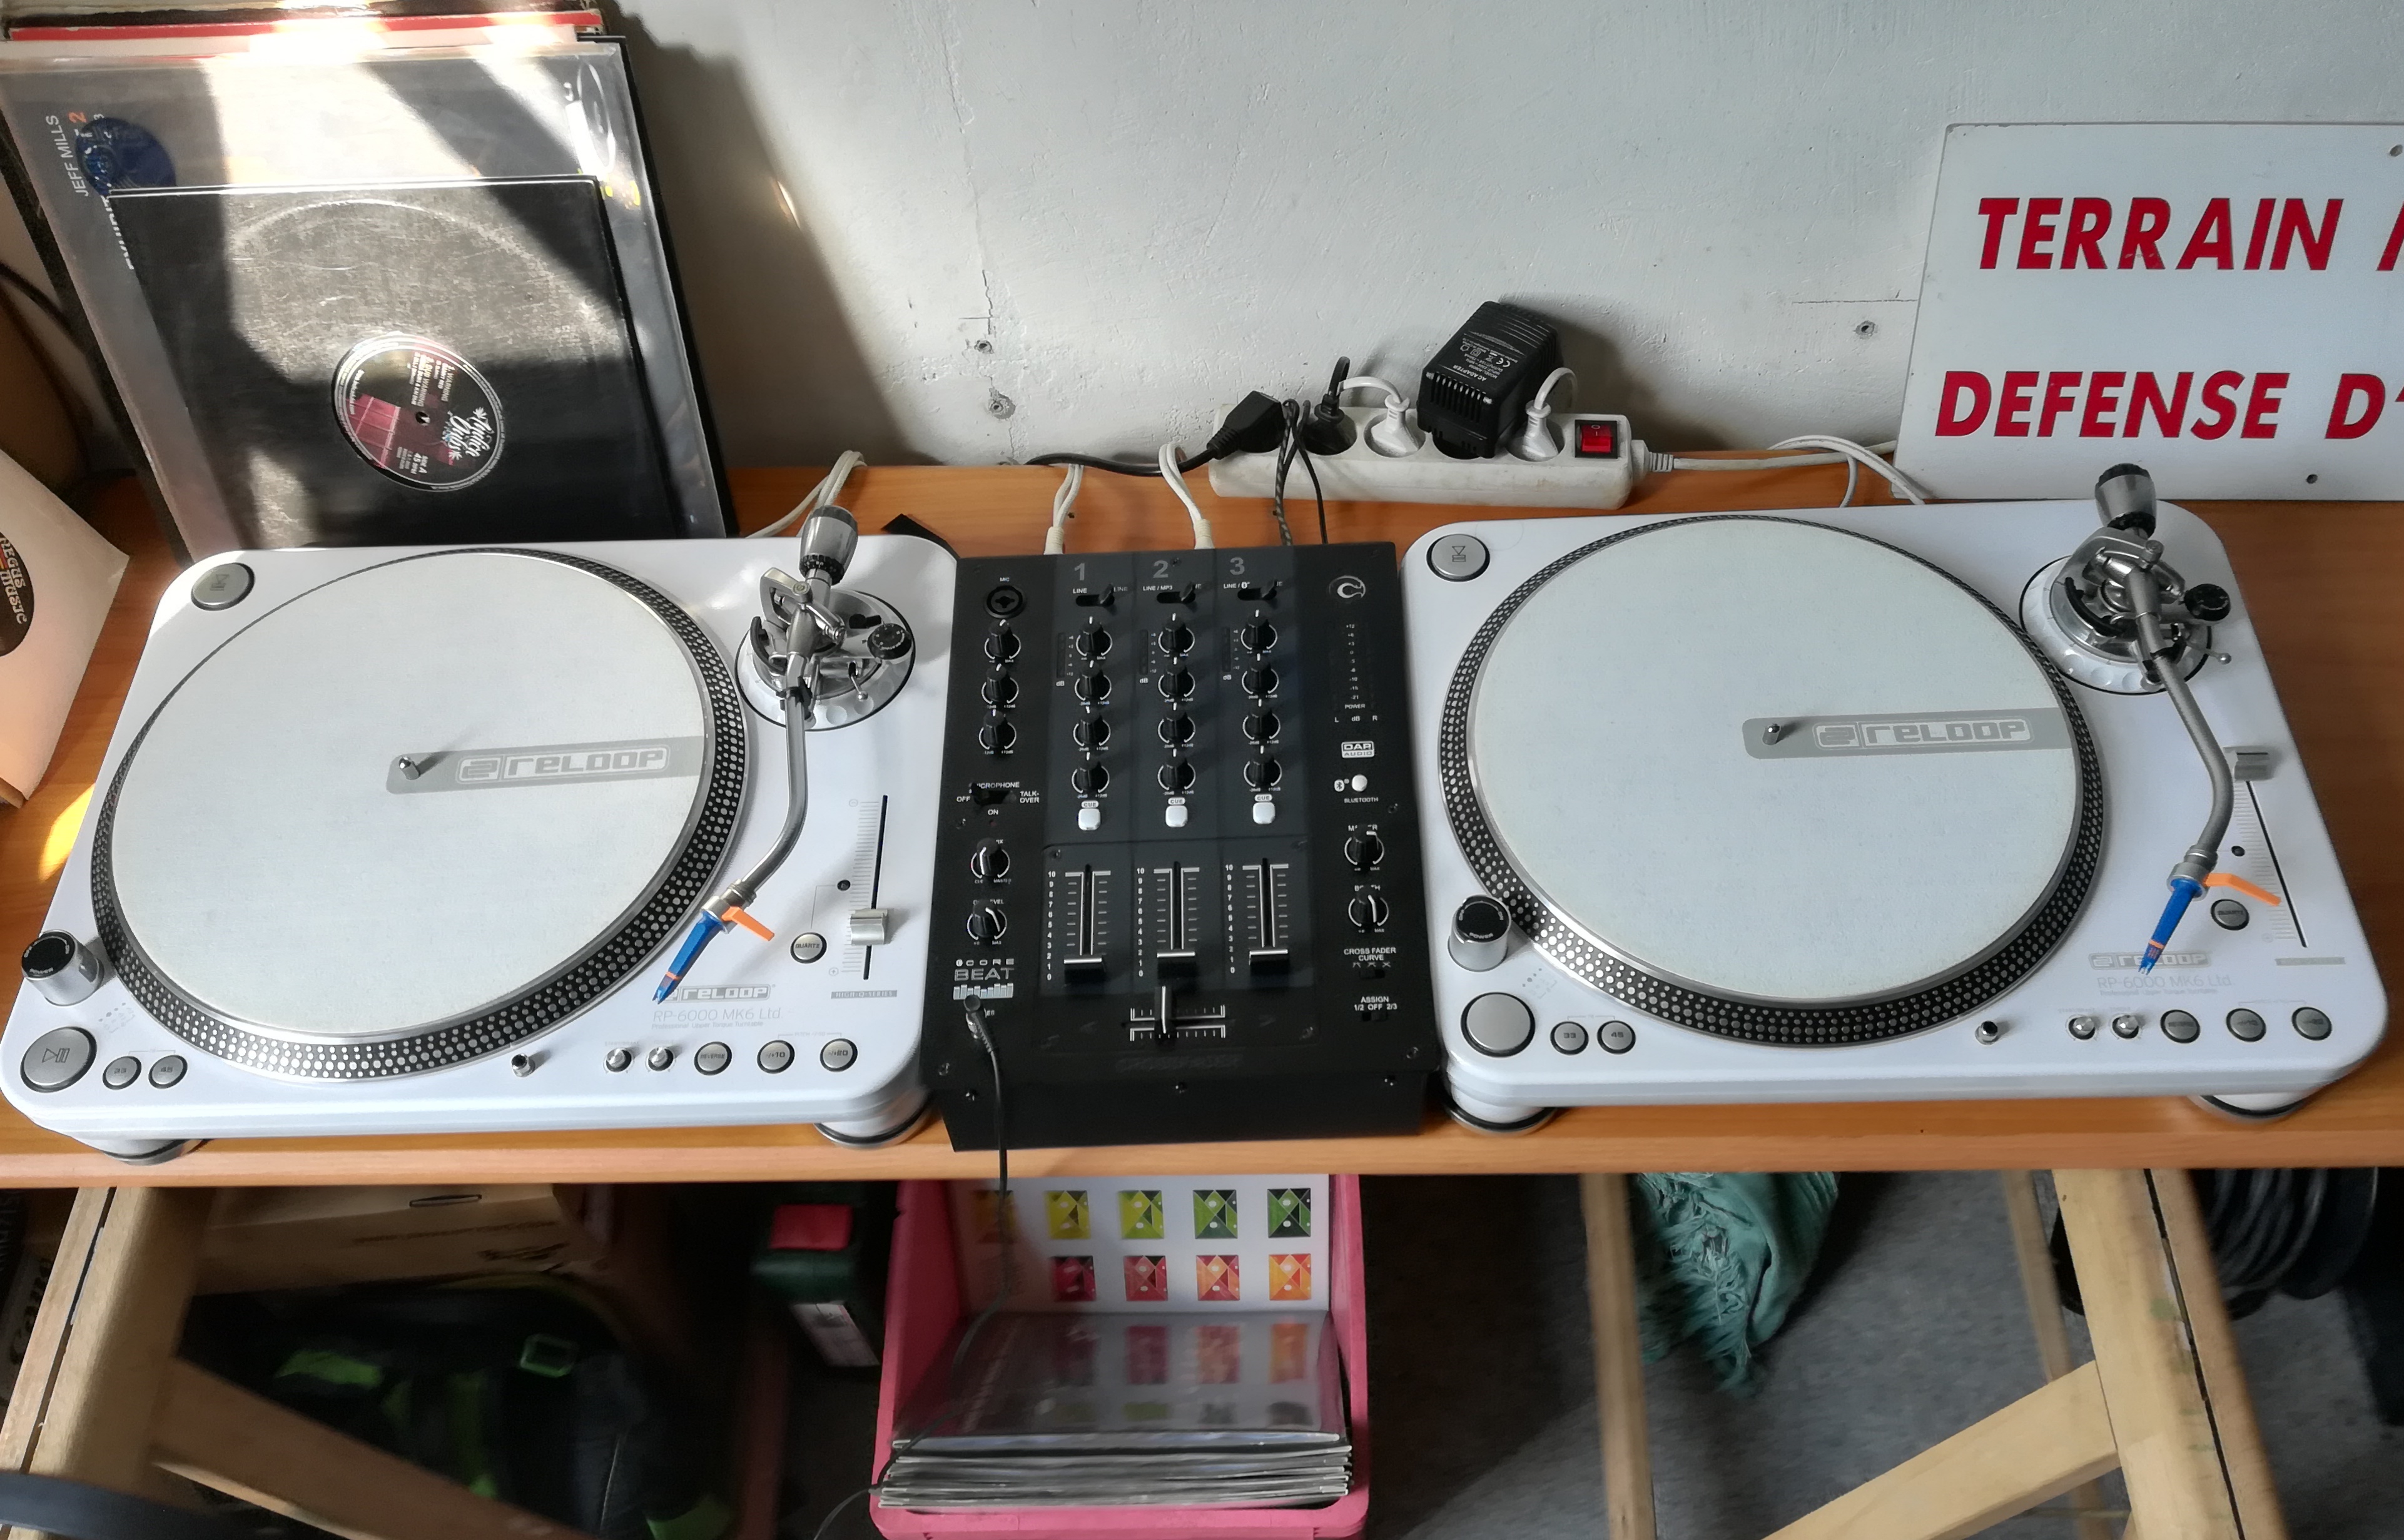 PLATINE VINYLE DJ RP 6000 MK6 Comparer les prix de PLATINE VINYLE DJ RP  6000 MK6 sur Hellopro.fr